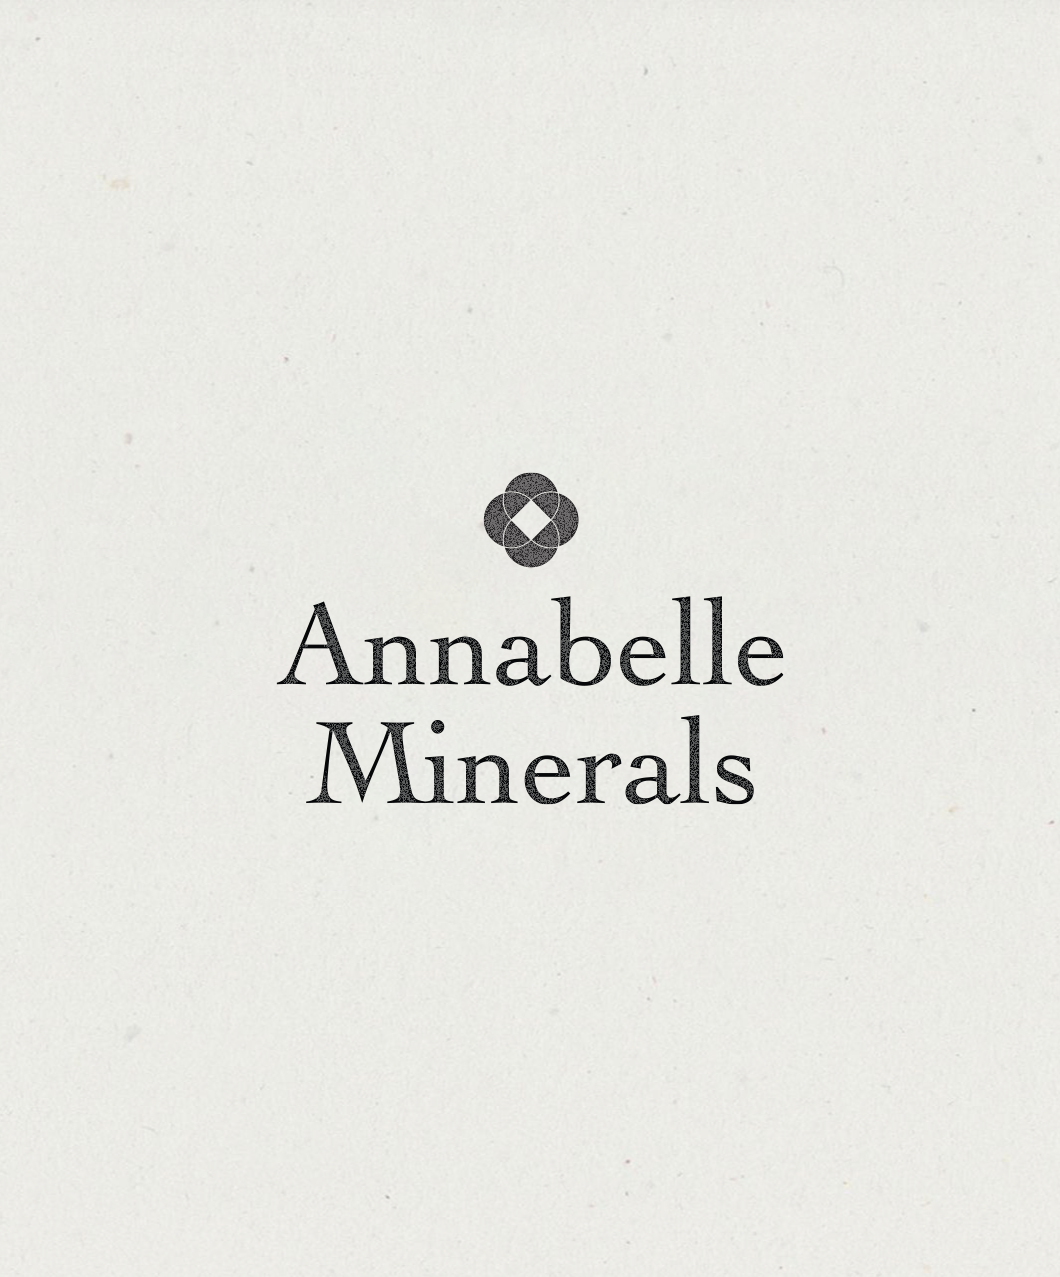 Annabelle Minerals 